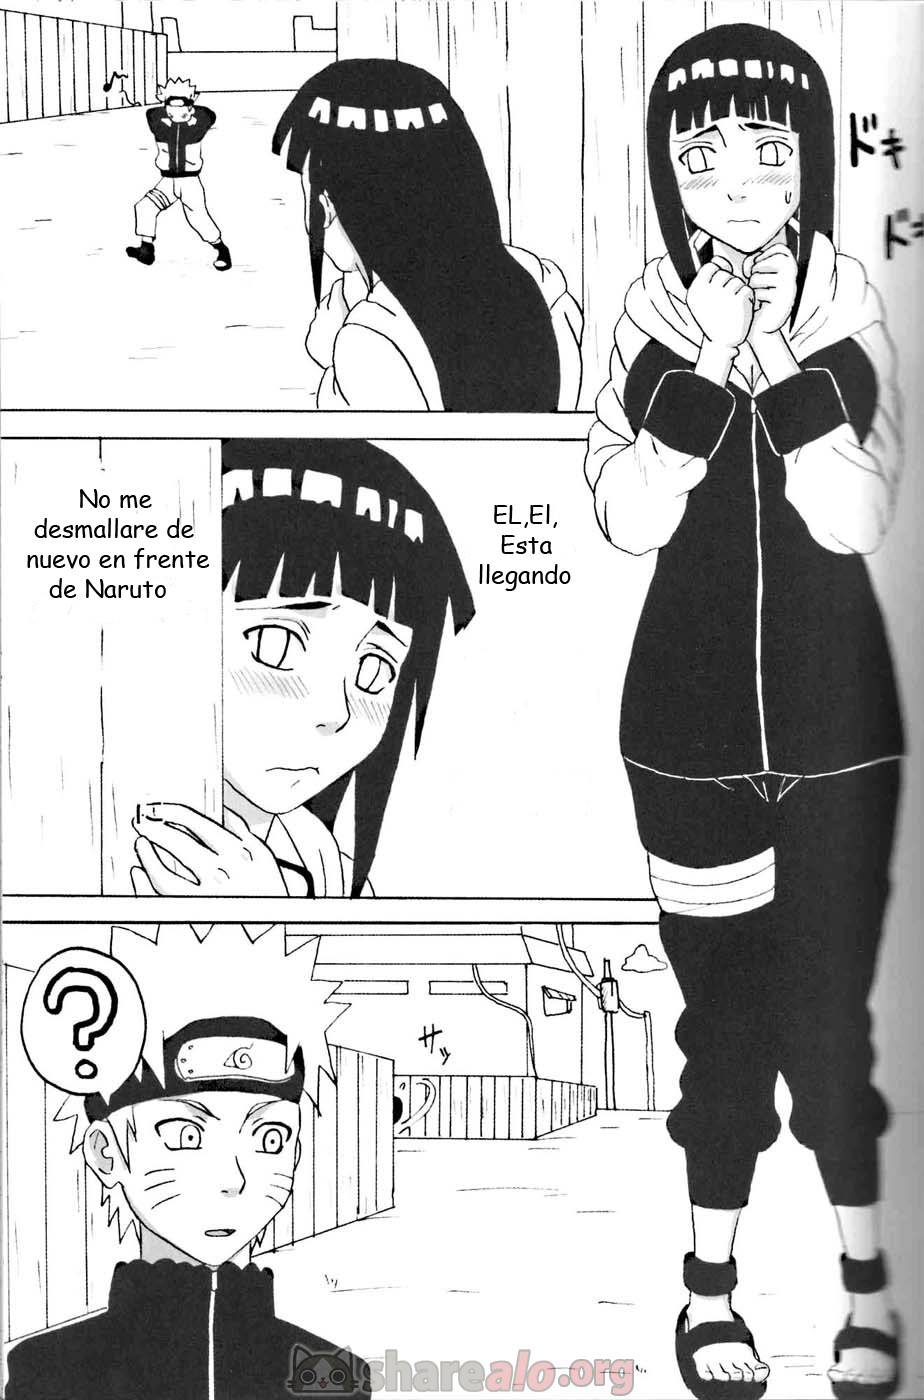 Hinata Ganbaru Doujin - 2 - Comics Porno - Hentai Manga - Cartoon XXX